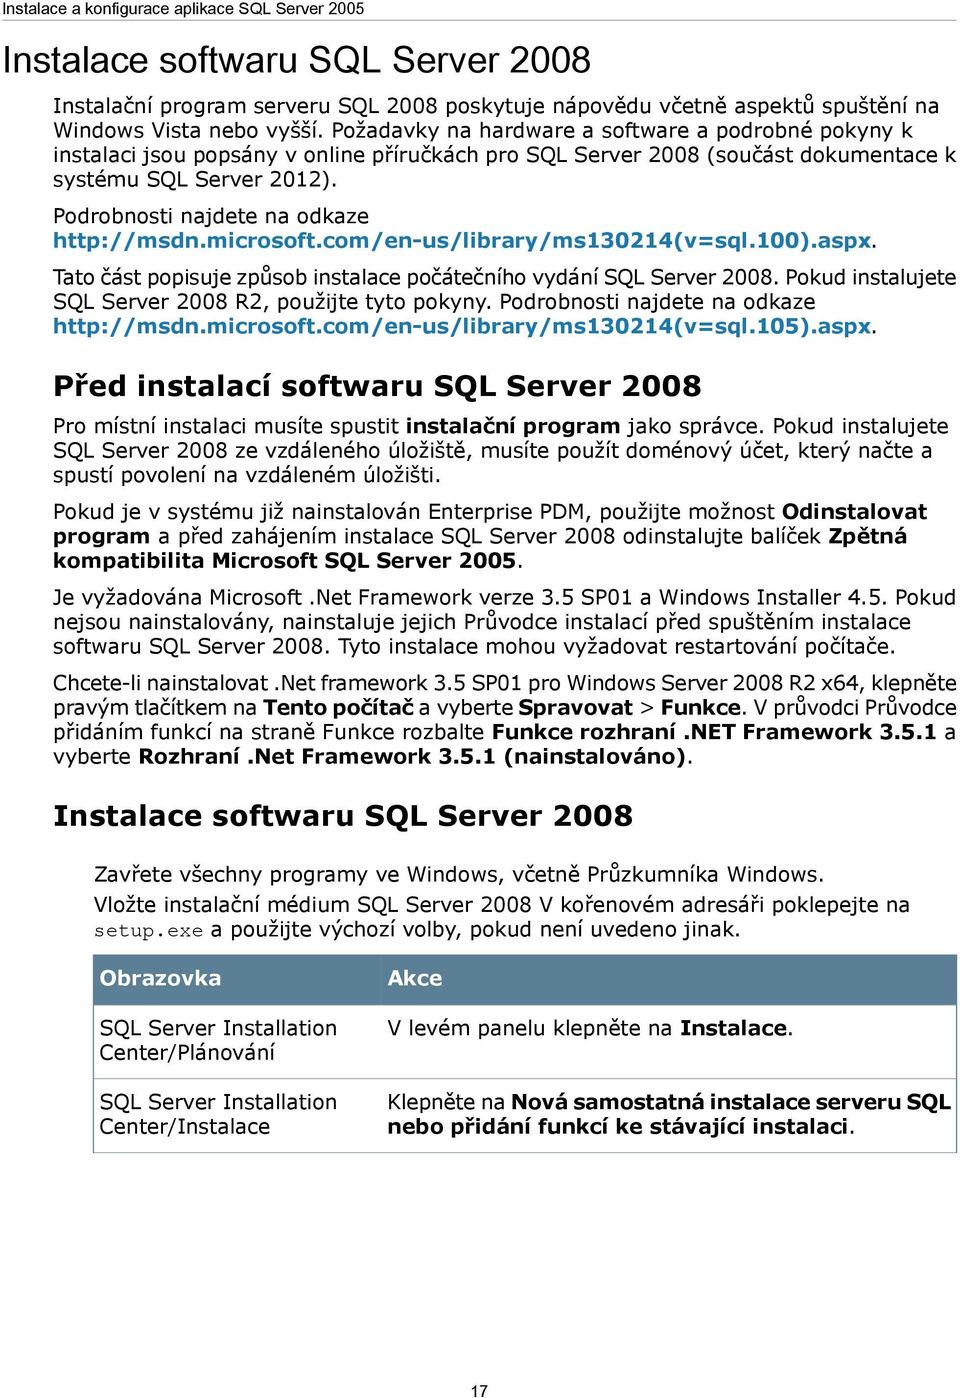 Podrobnosti najdete na odkaze http://msdn.microsoft.com/en-us/library/ms130214(v=sql.100).aspx. Tato část popisuje způsob instalace počátečního vydání SQL Server 2008.